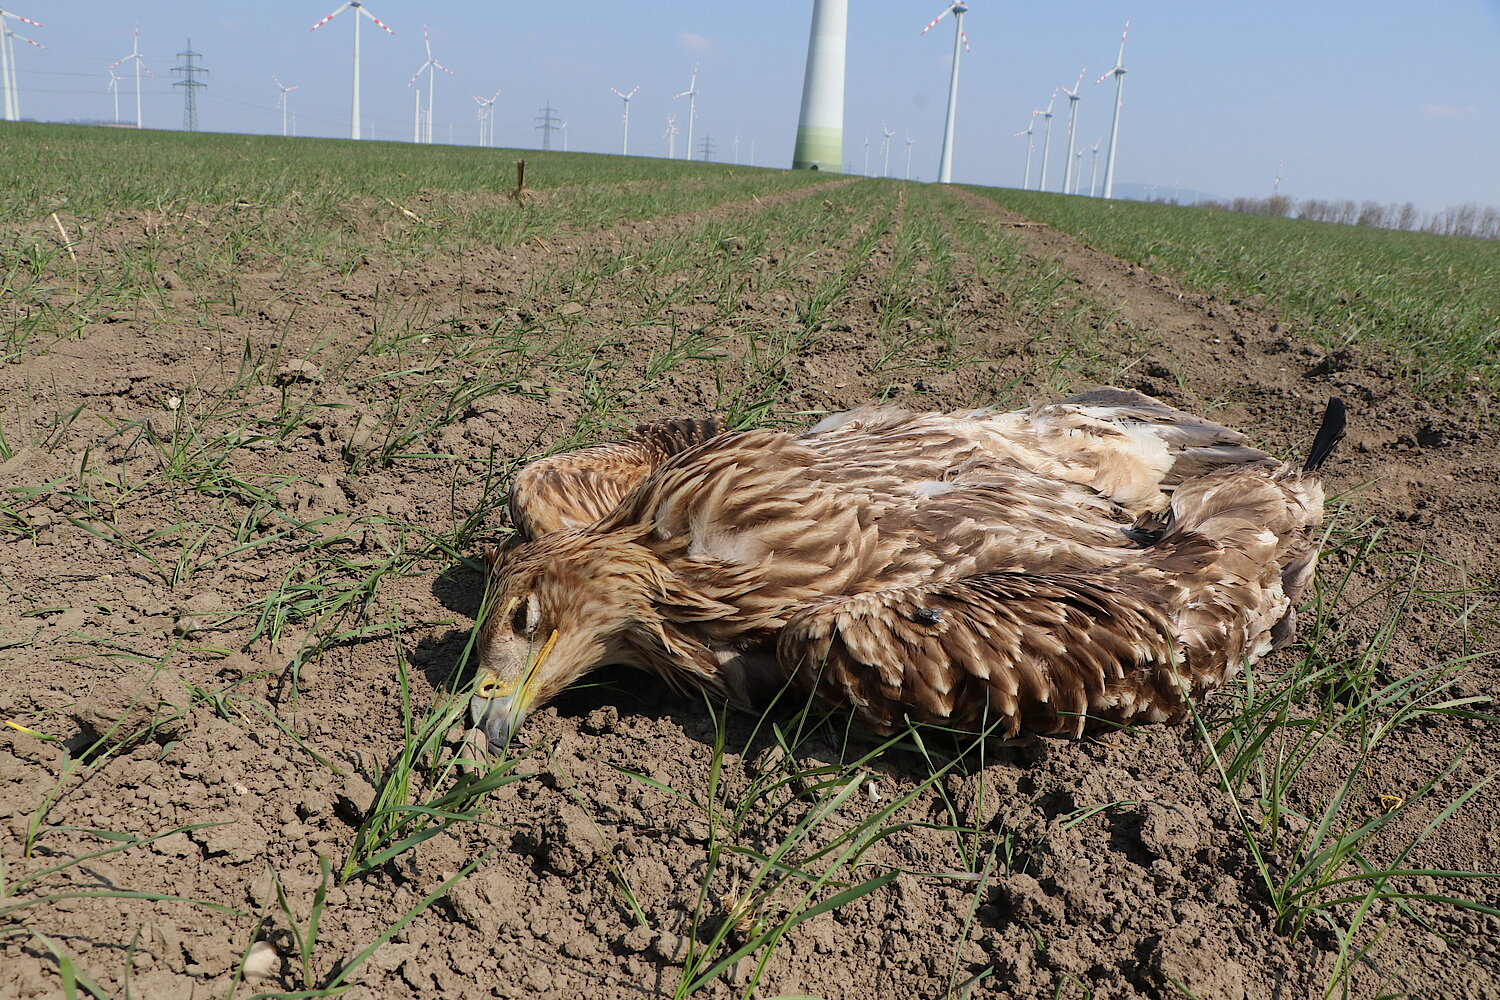 Toter Kaiseradler auf Ackerboden, im Hintergrund sind zahlreiche Windkraftanlagen zu sehen.